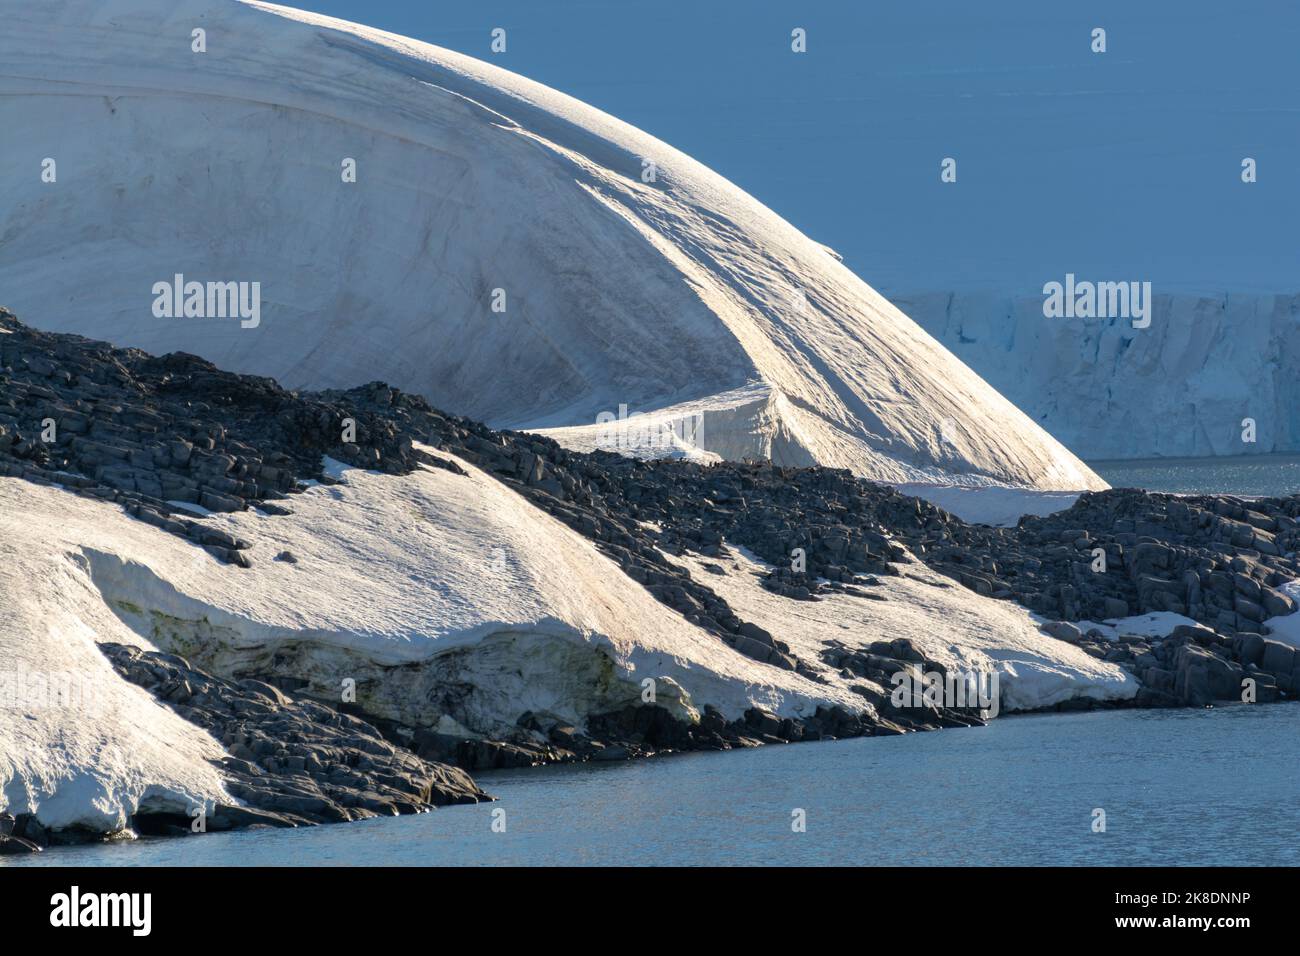 detalle de hielo, nieve y roca de la isla wiencke en la costa del puerto lockroy con picos nevados de la isla anvers detrás. península antártica Foto de stock